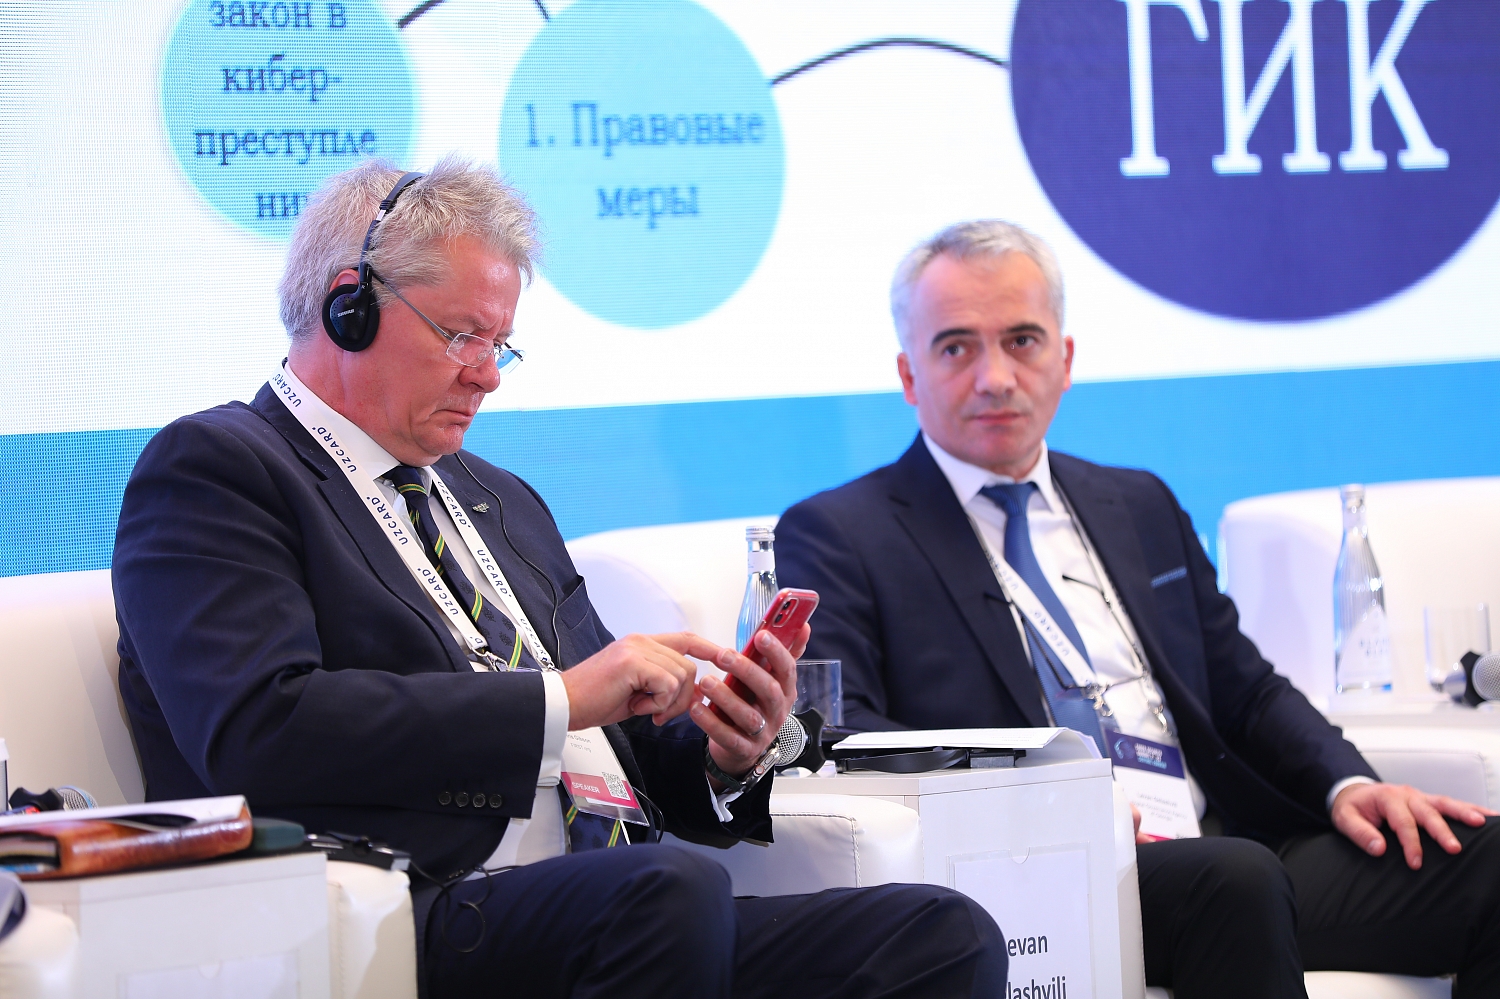 Фотоотчет с мероприятия «Саммит по кибербезопасности – Центральная Евразия, CSS 2023».